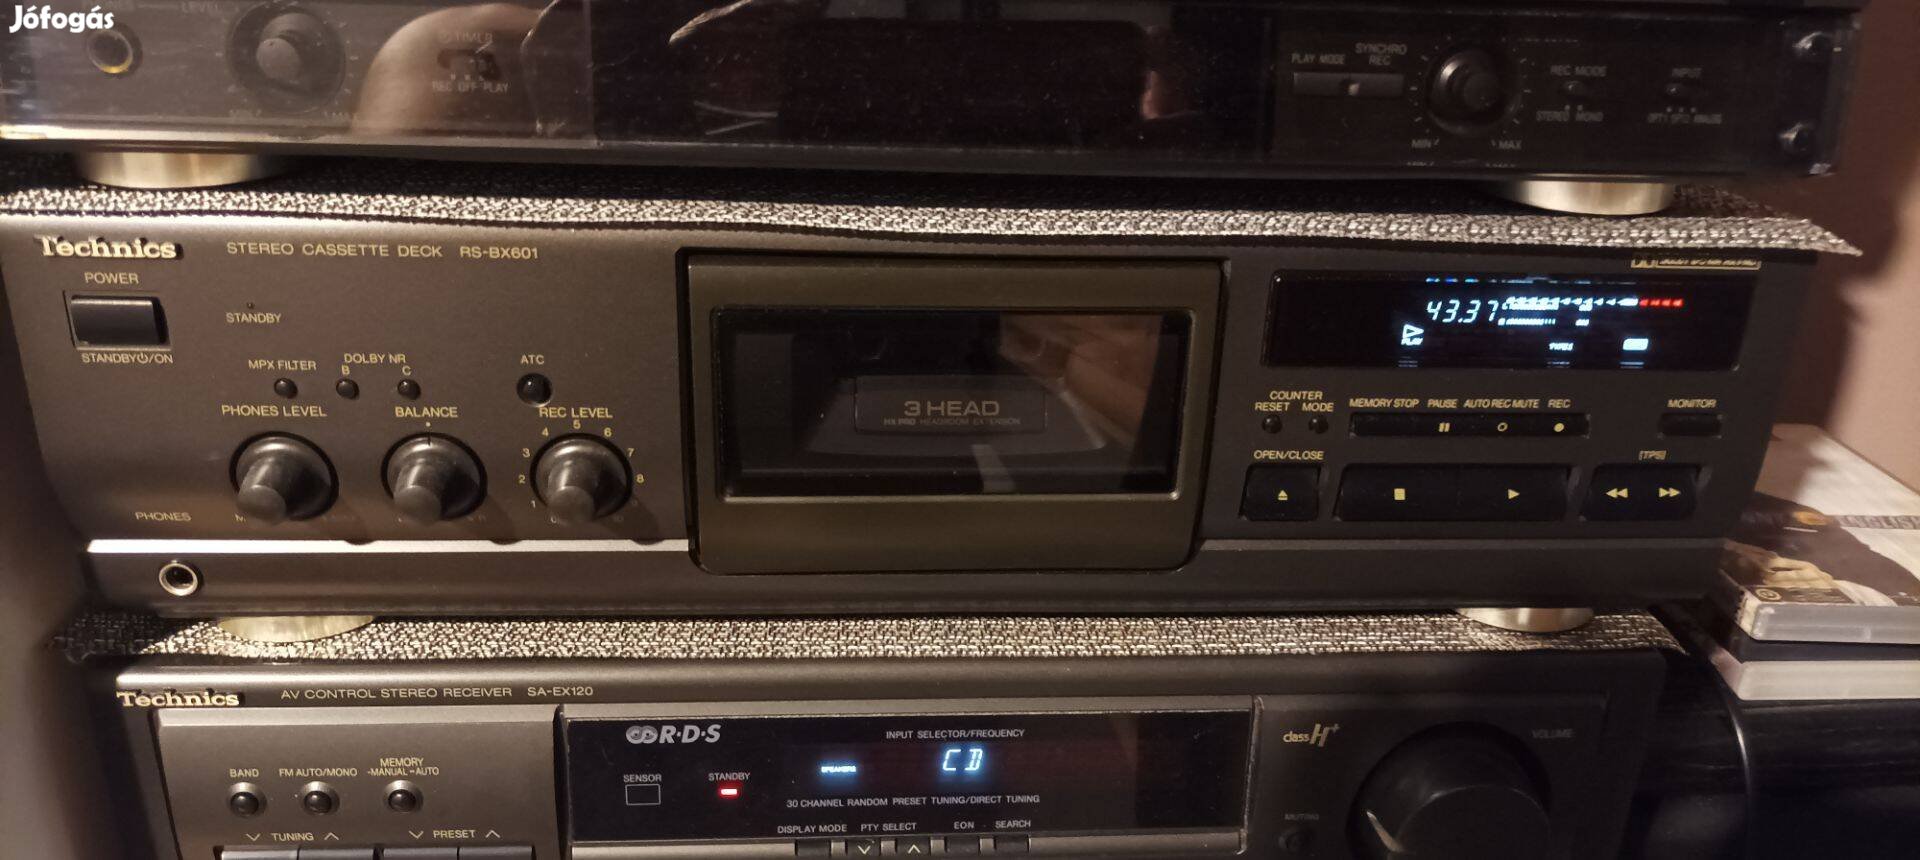 Eladó Technics Rs-Bx601- audio magnó deck